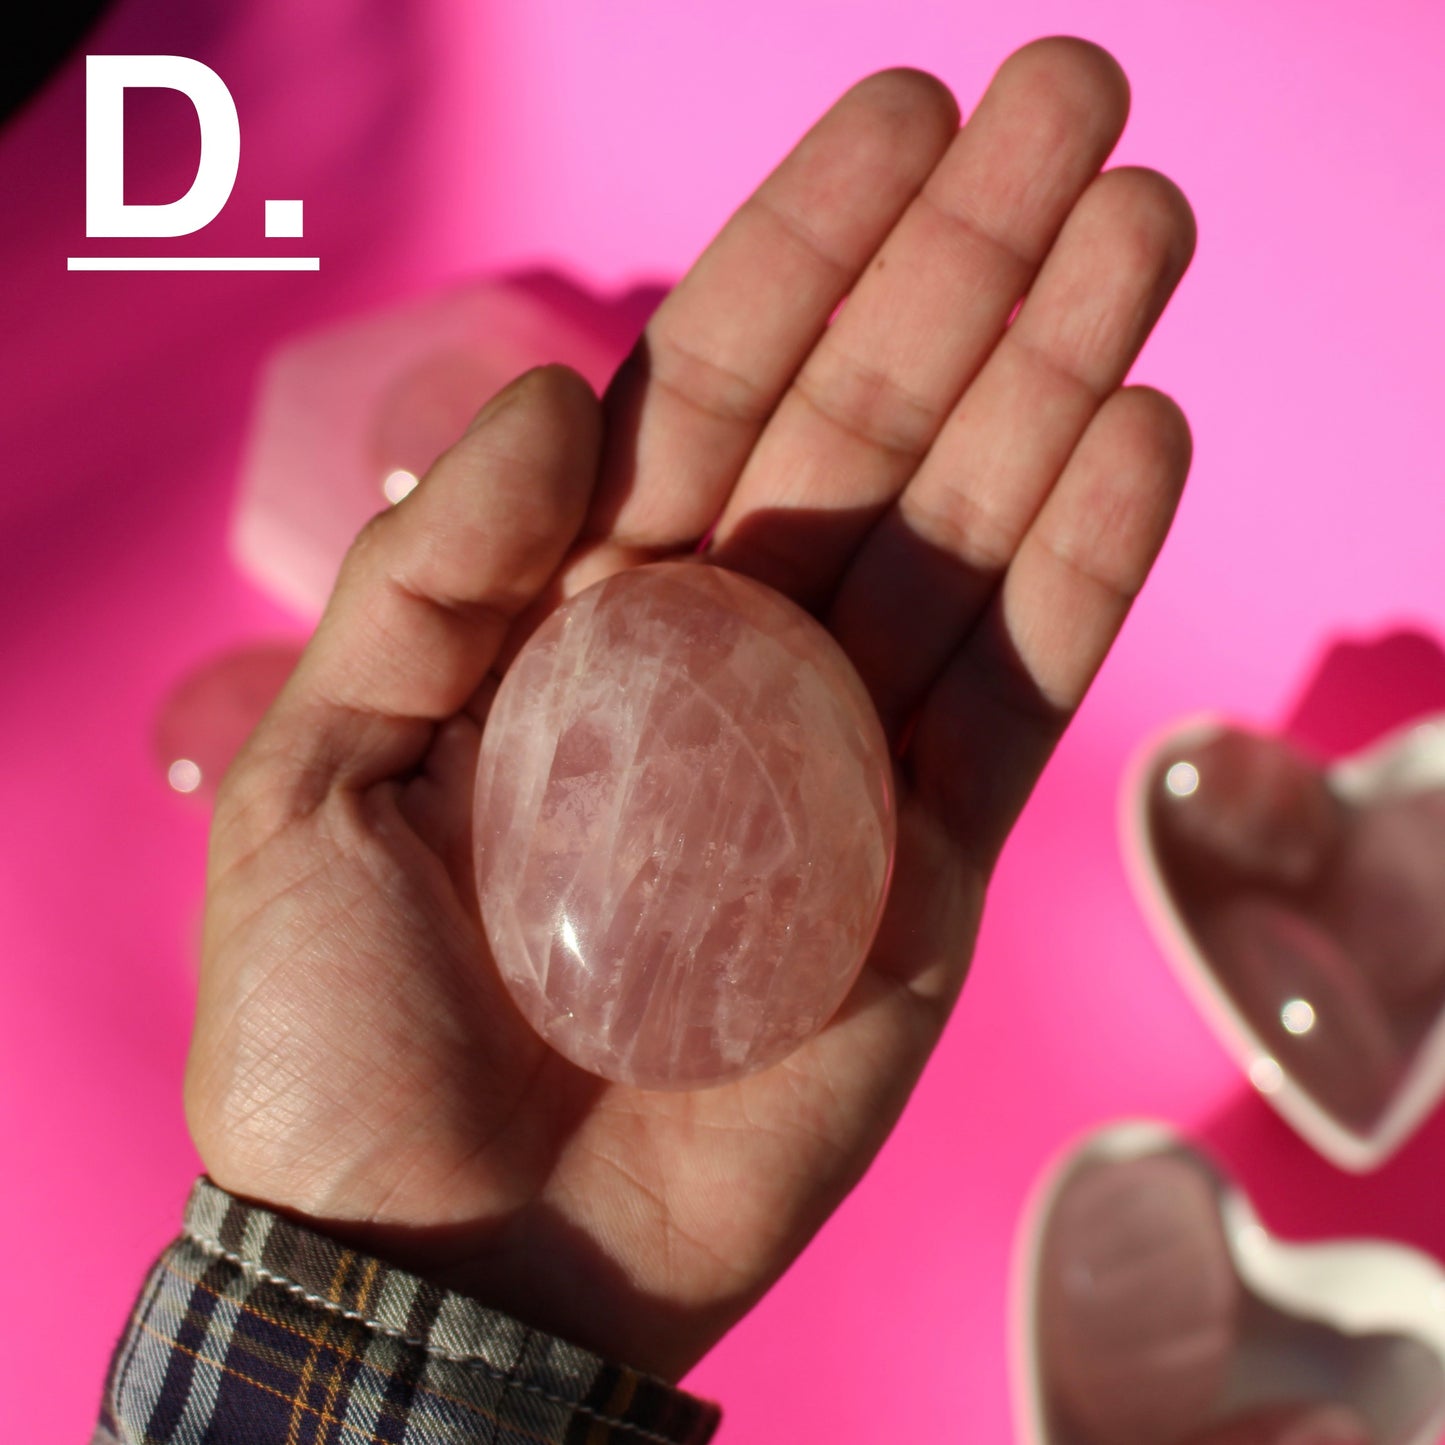 Rose Quartz - Palm Stones (Pick Your Own!) - D - Emit Energy